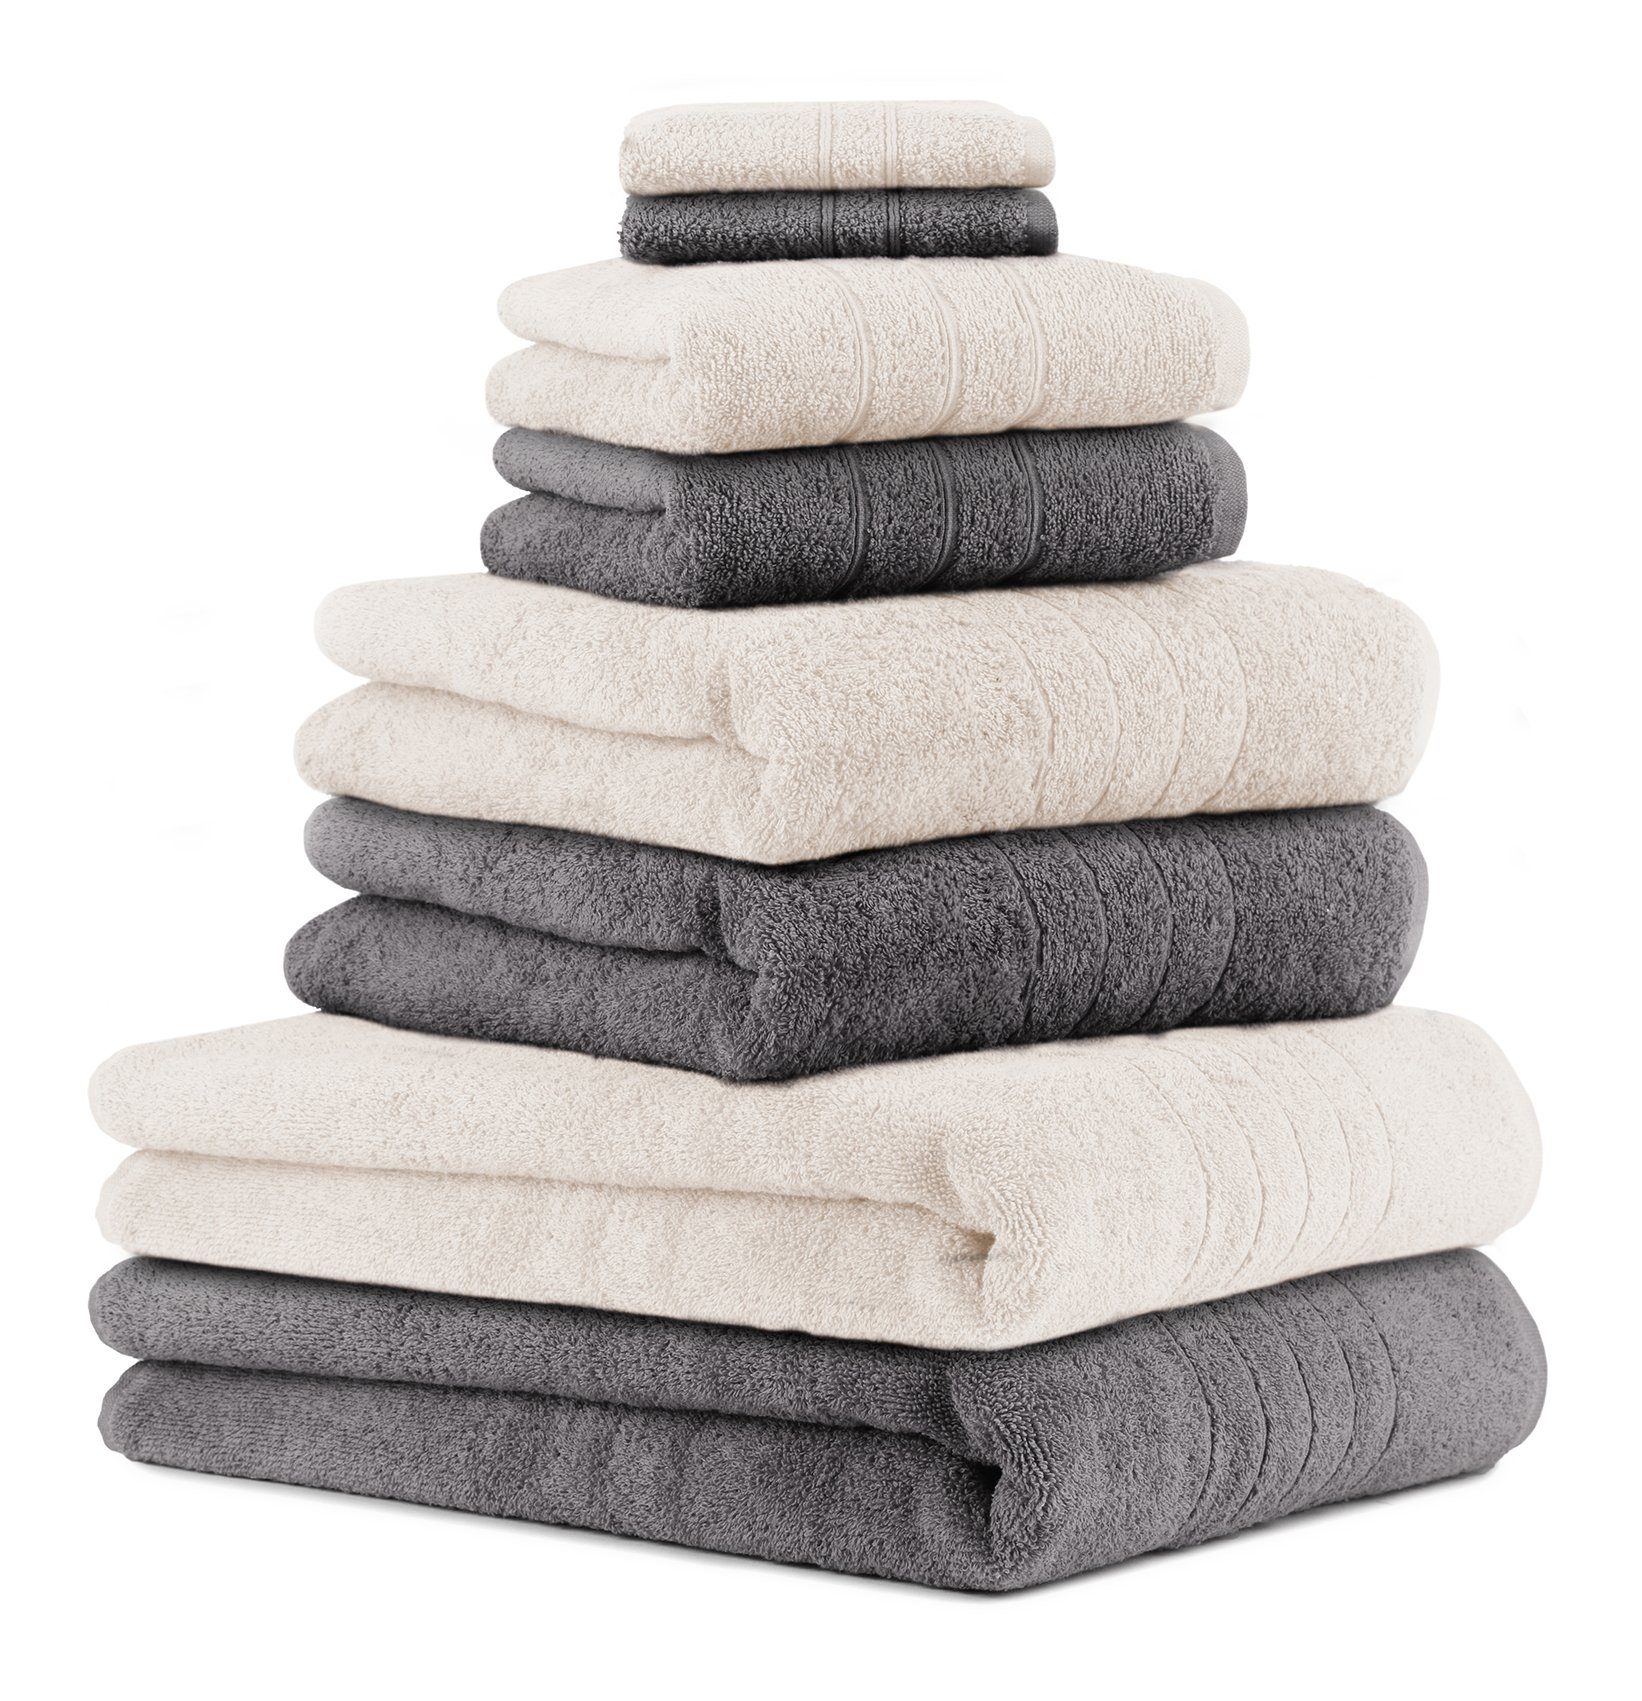 Betz Handtuch Set 8-TLG. Handtuch-Set Deluxe 100% Baumwolle 2 Badetücher 2  Duschtücher 2 Handtücher 2 Seiftücher Farbe anthrazit grau und Creme, 100%  Baumwolle, (8-tlg)